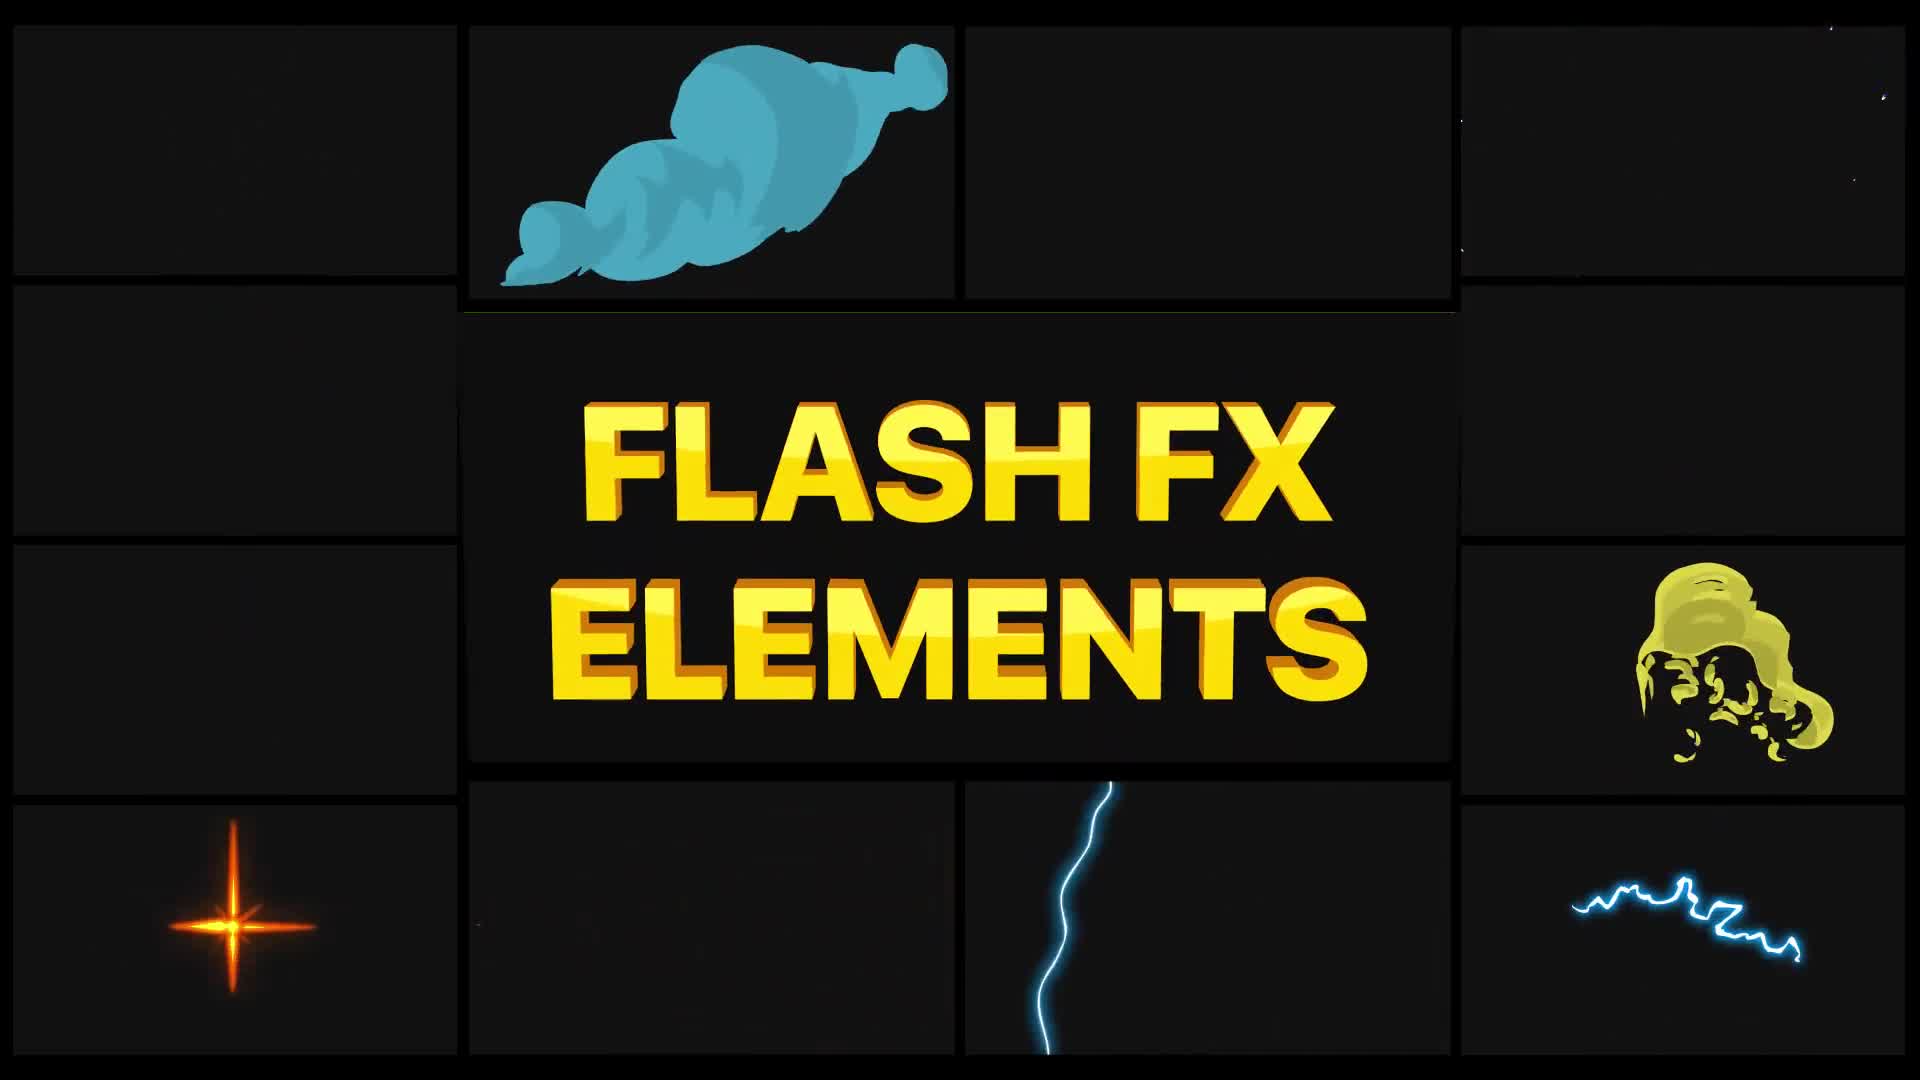 Flash FX Pack 09 | Premiere Pro MOGRT Videohive 34611719 Premiere Pro Image 1